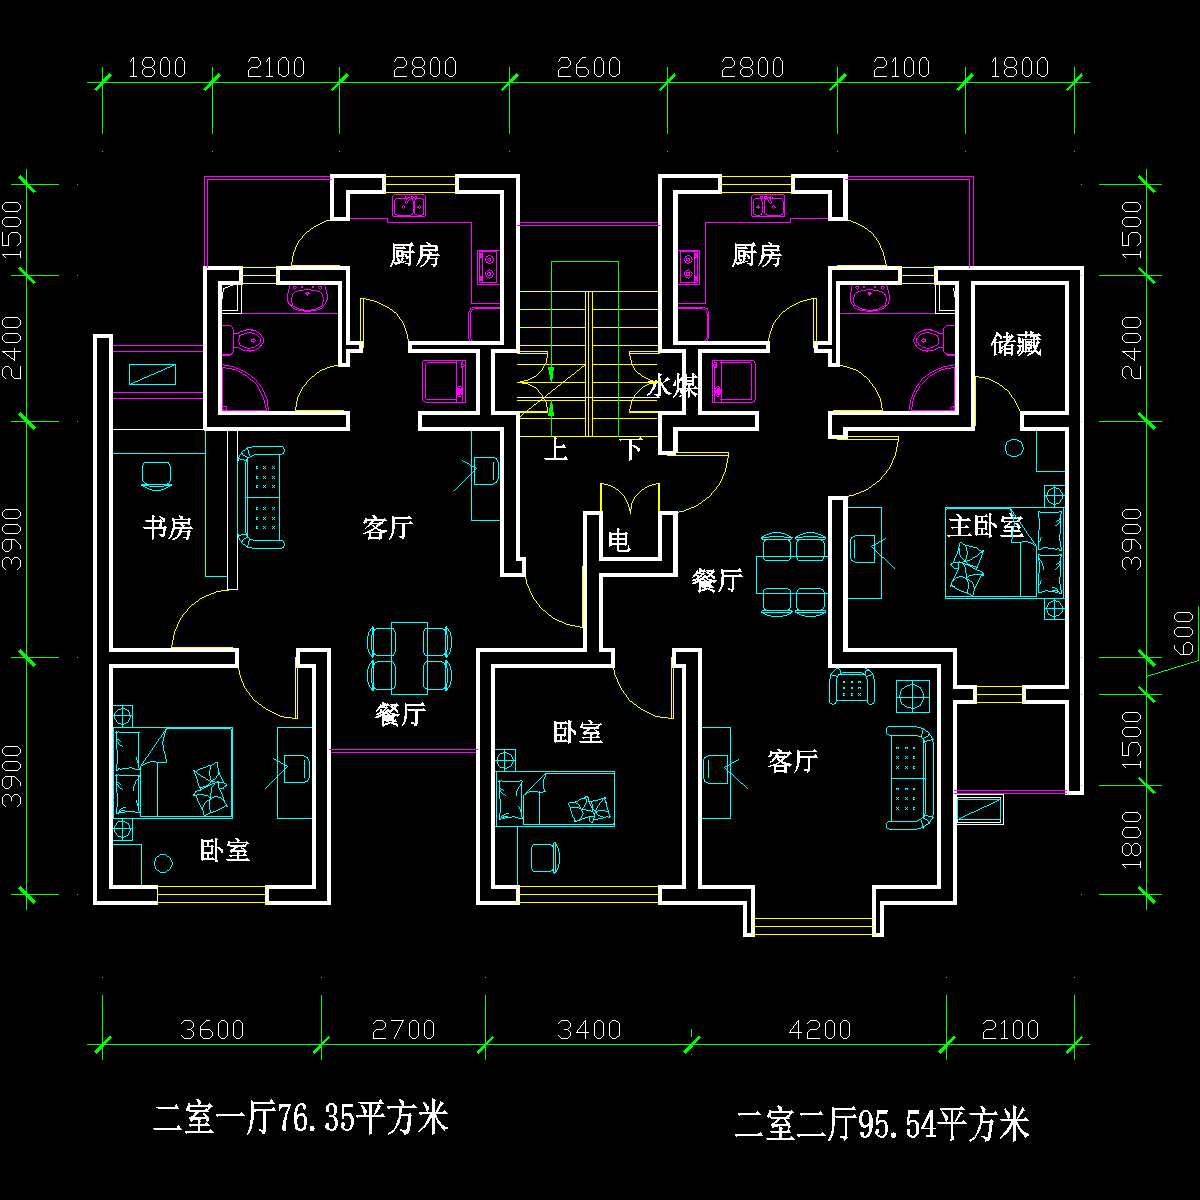 板式多层一梯二户二室一厅、二室二厅户型CAD图纸(76/96)